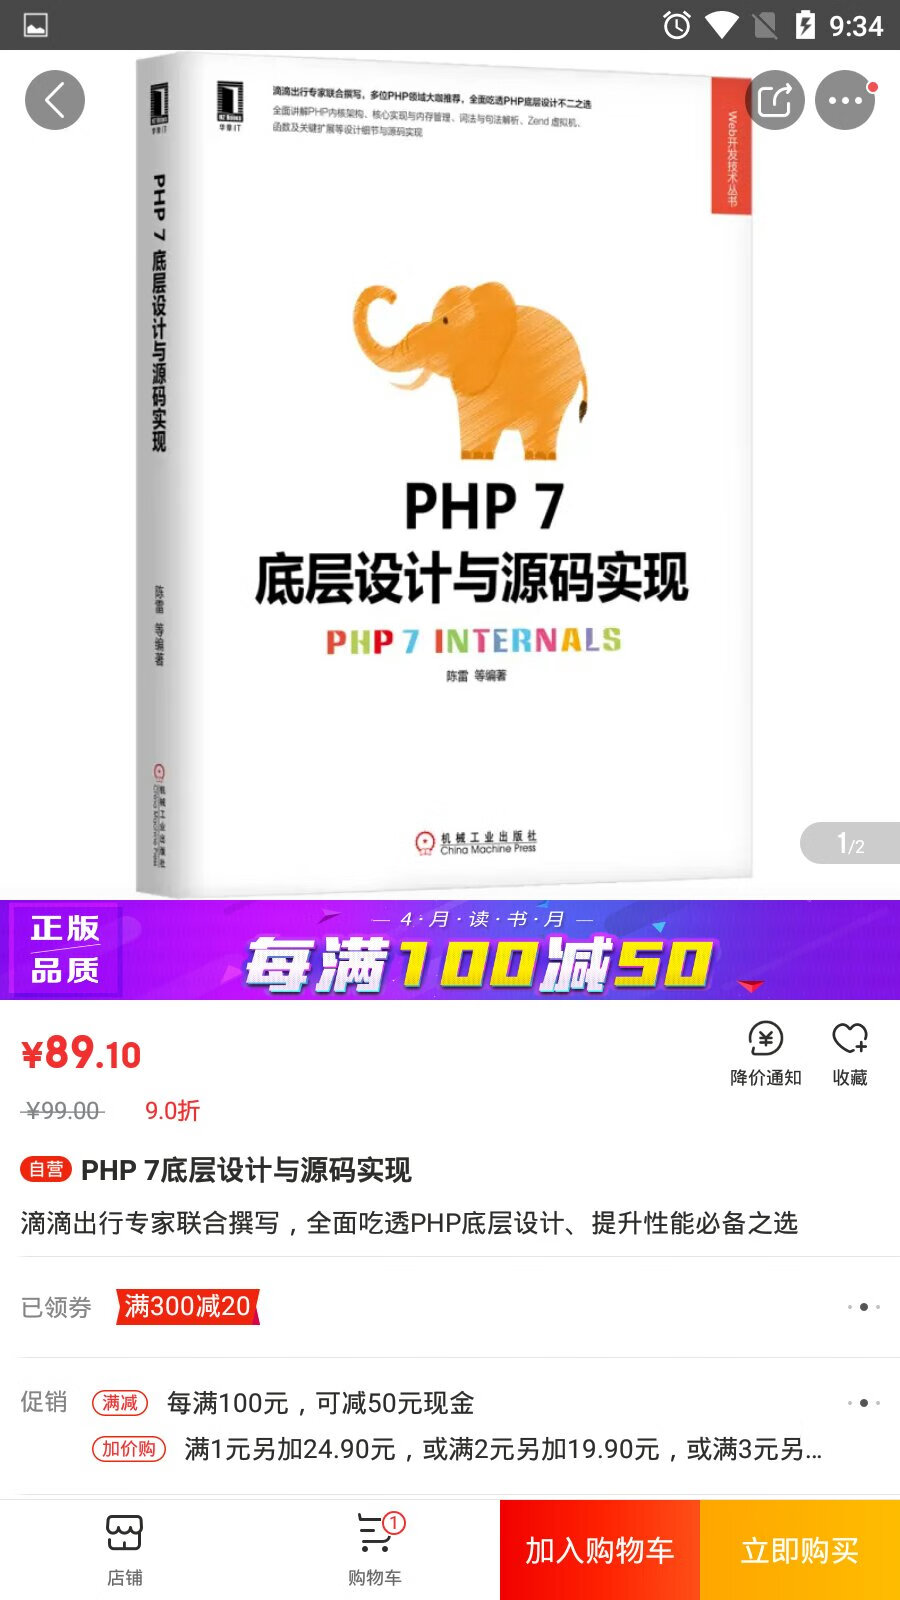 PHP 7底层设计与源码实现 PHP 7底层设计与源码实现 PHP 7底层设计与源码实现